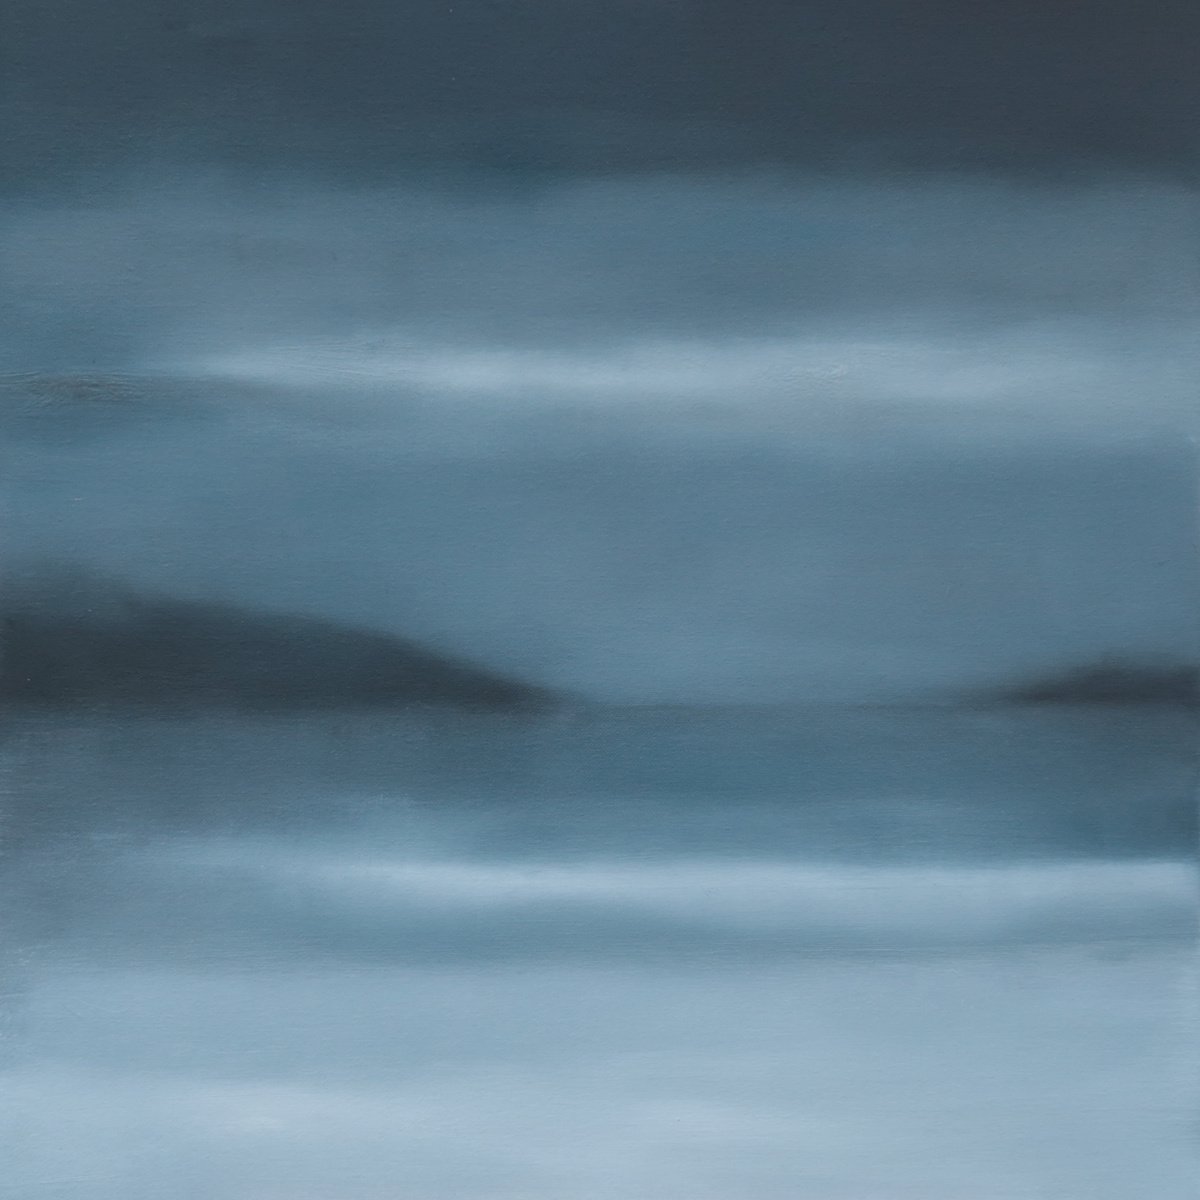 Winter Sea by Howard Sills